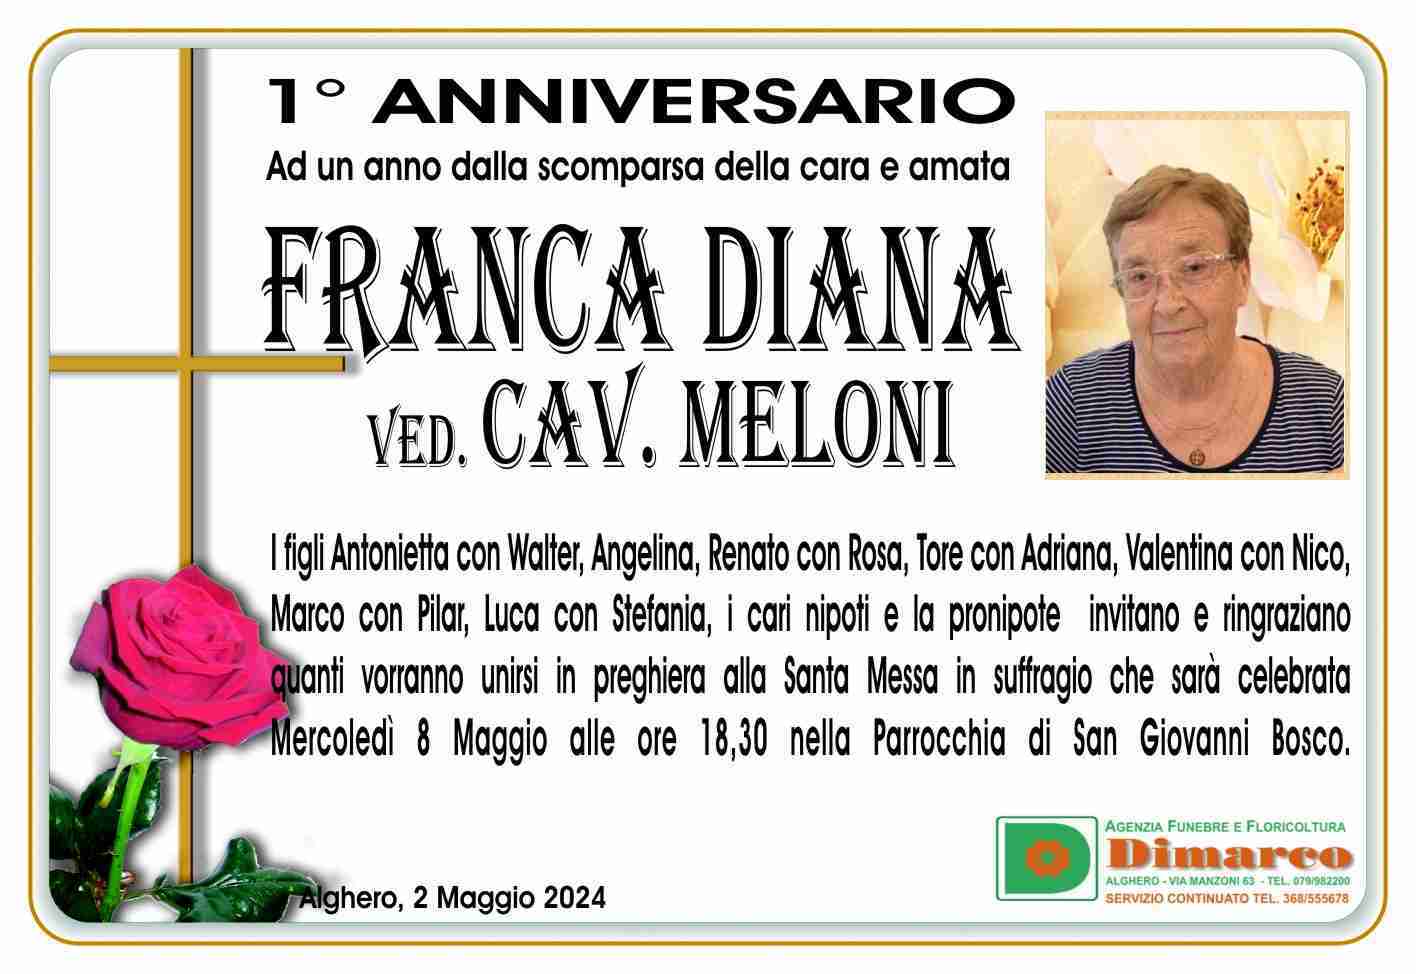 Franca Diana ved. Cav. Meloni